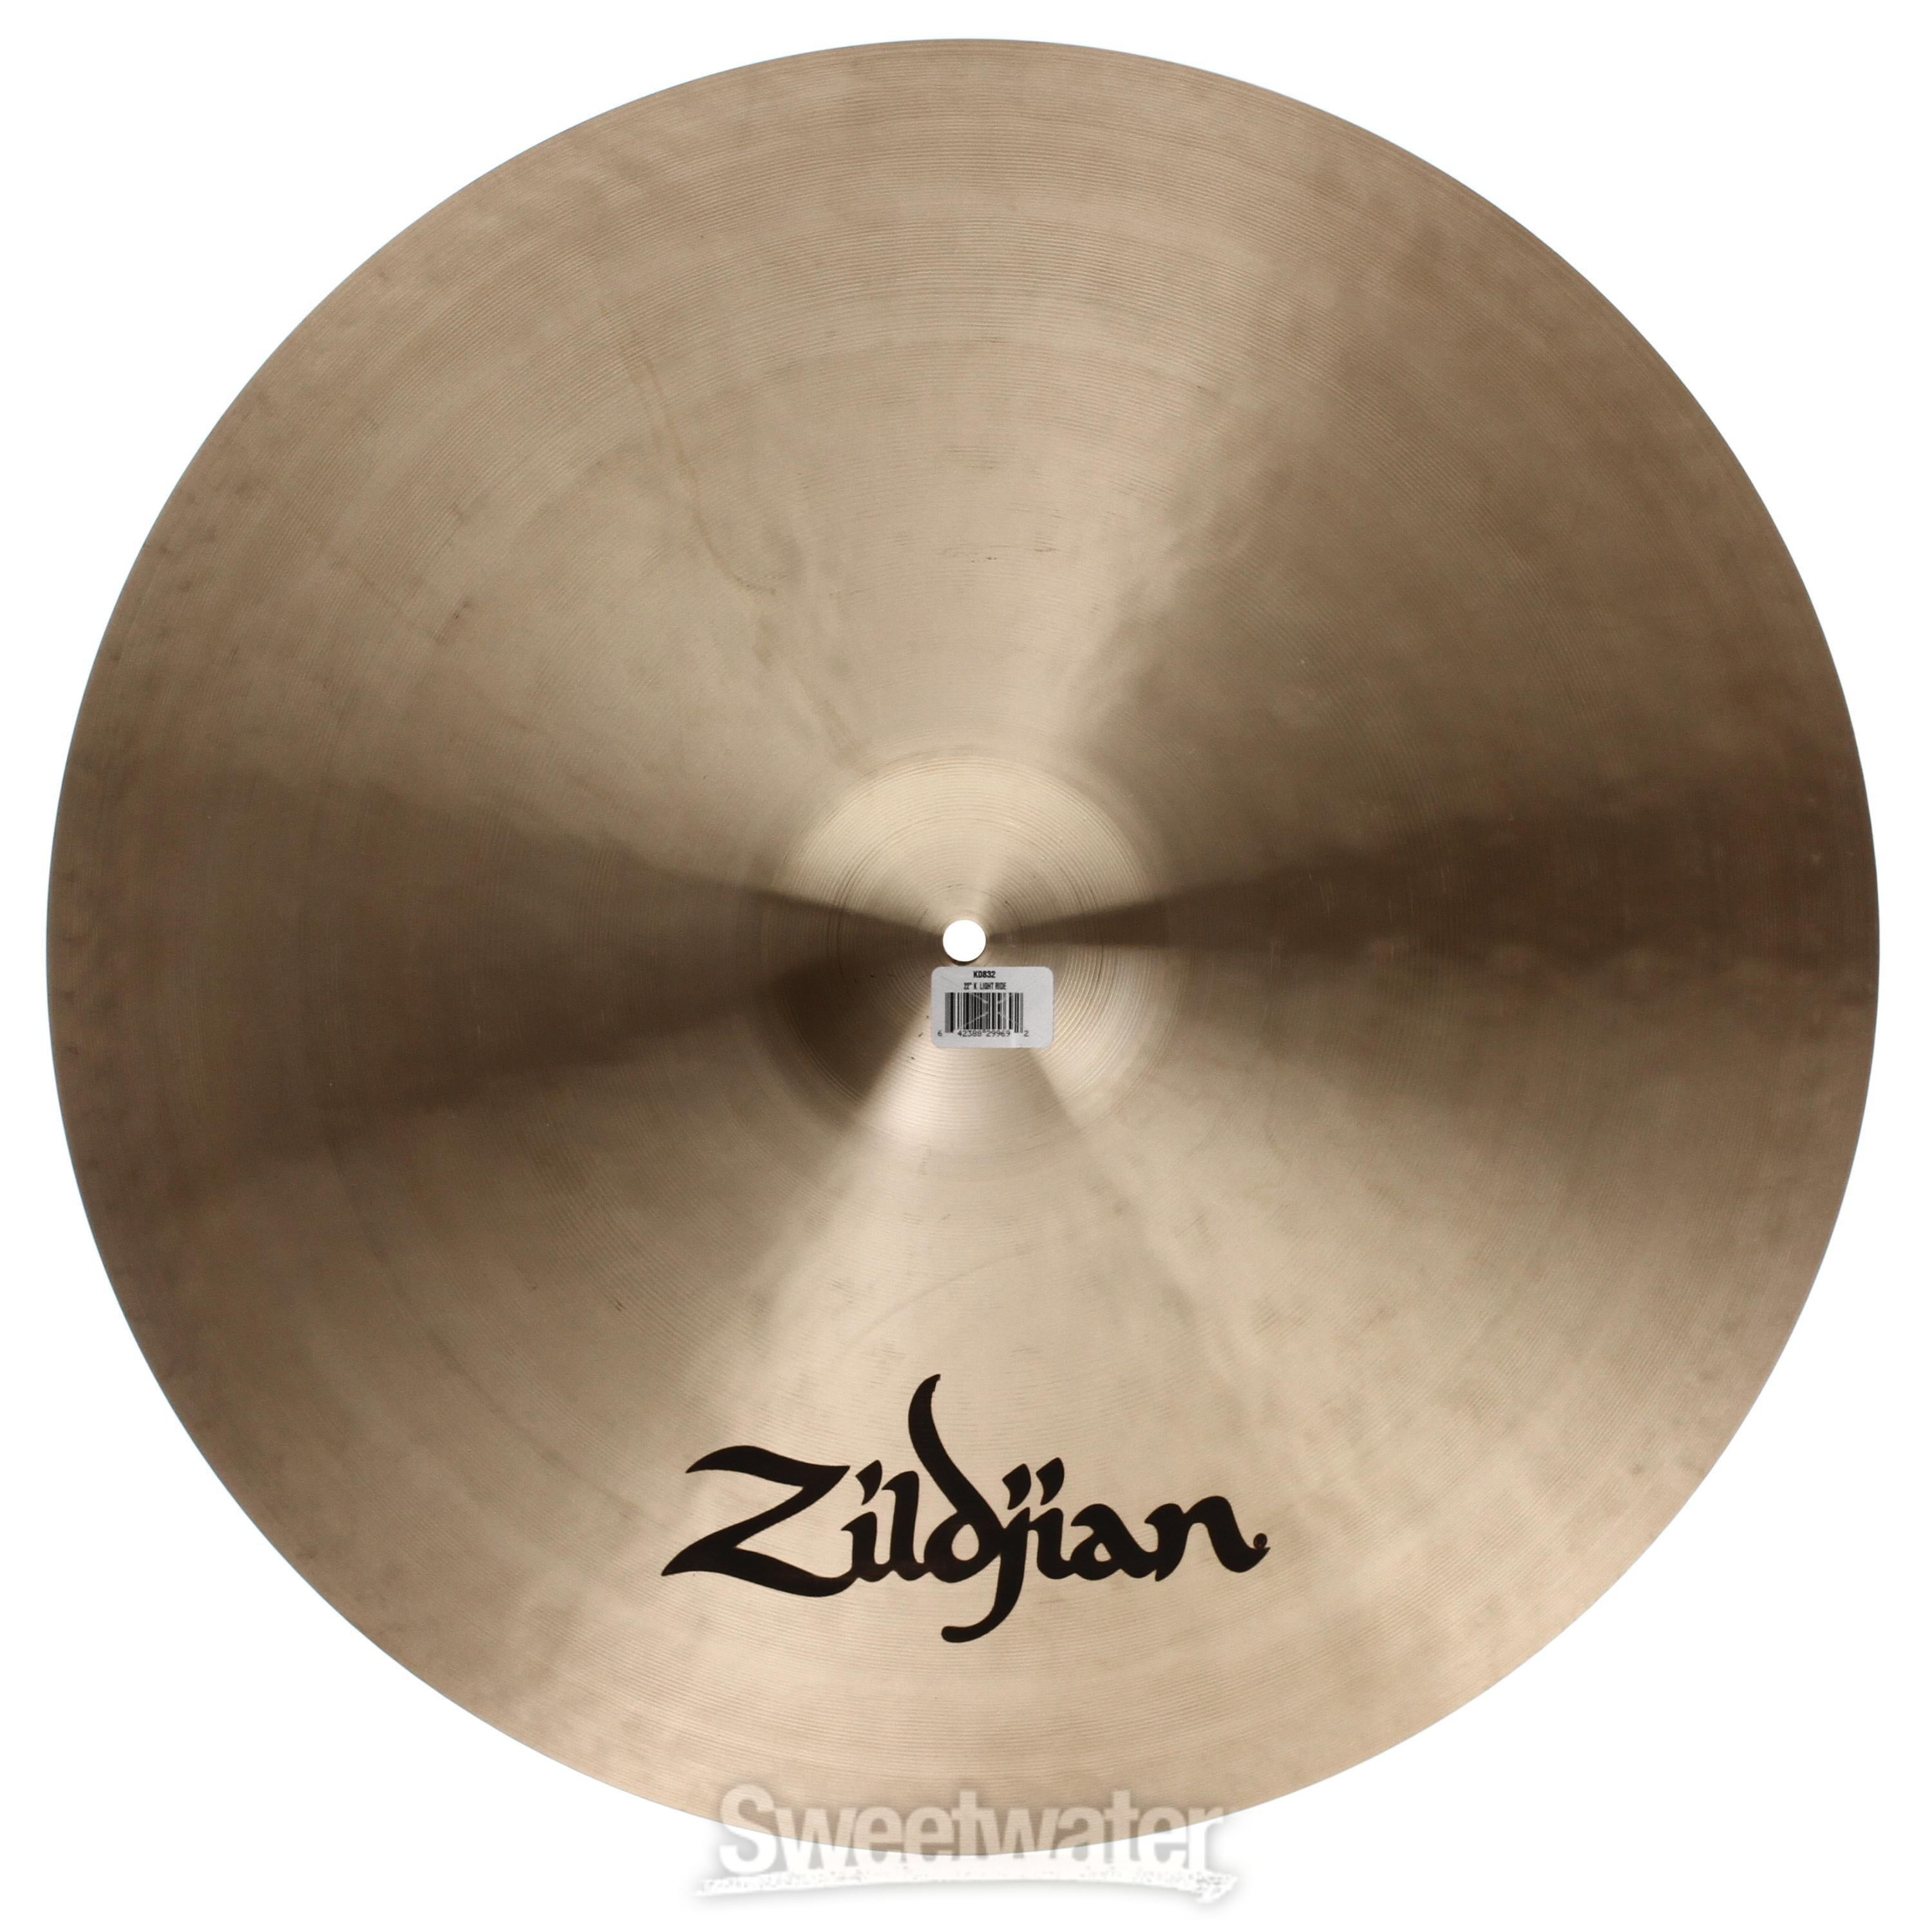 Zildjian 22 inch K Zildjian Light Ride Cymbal Reviews | Sweetwater